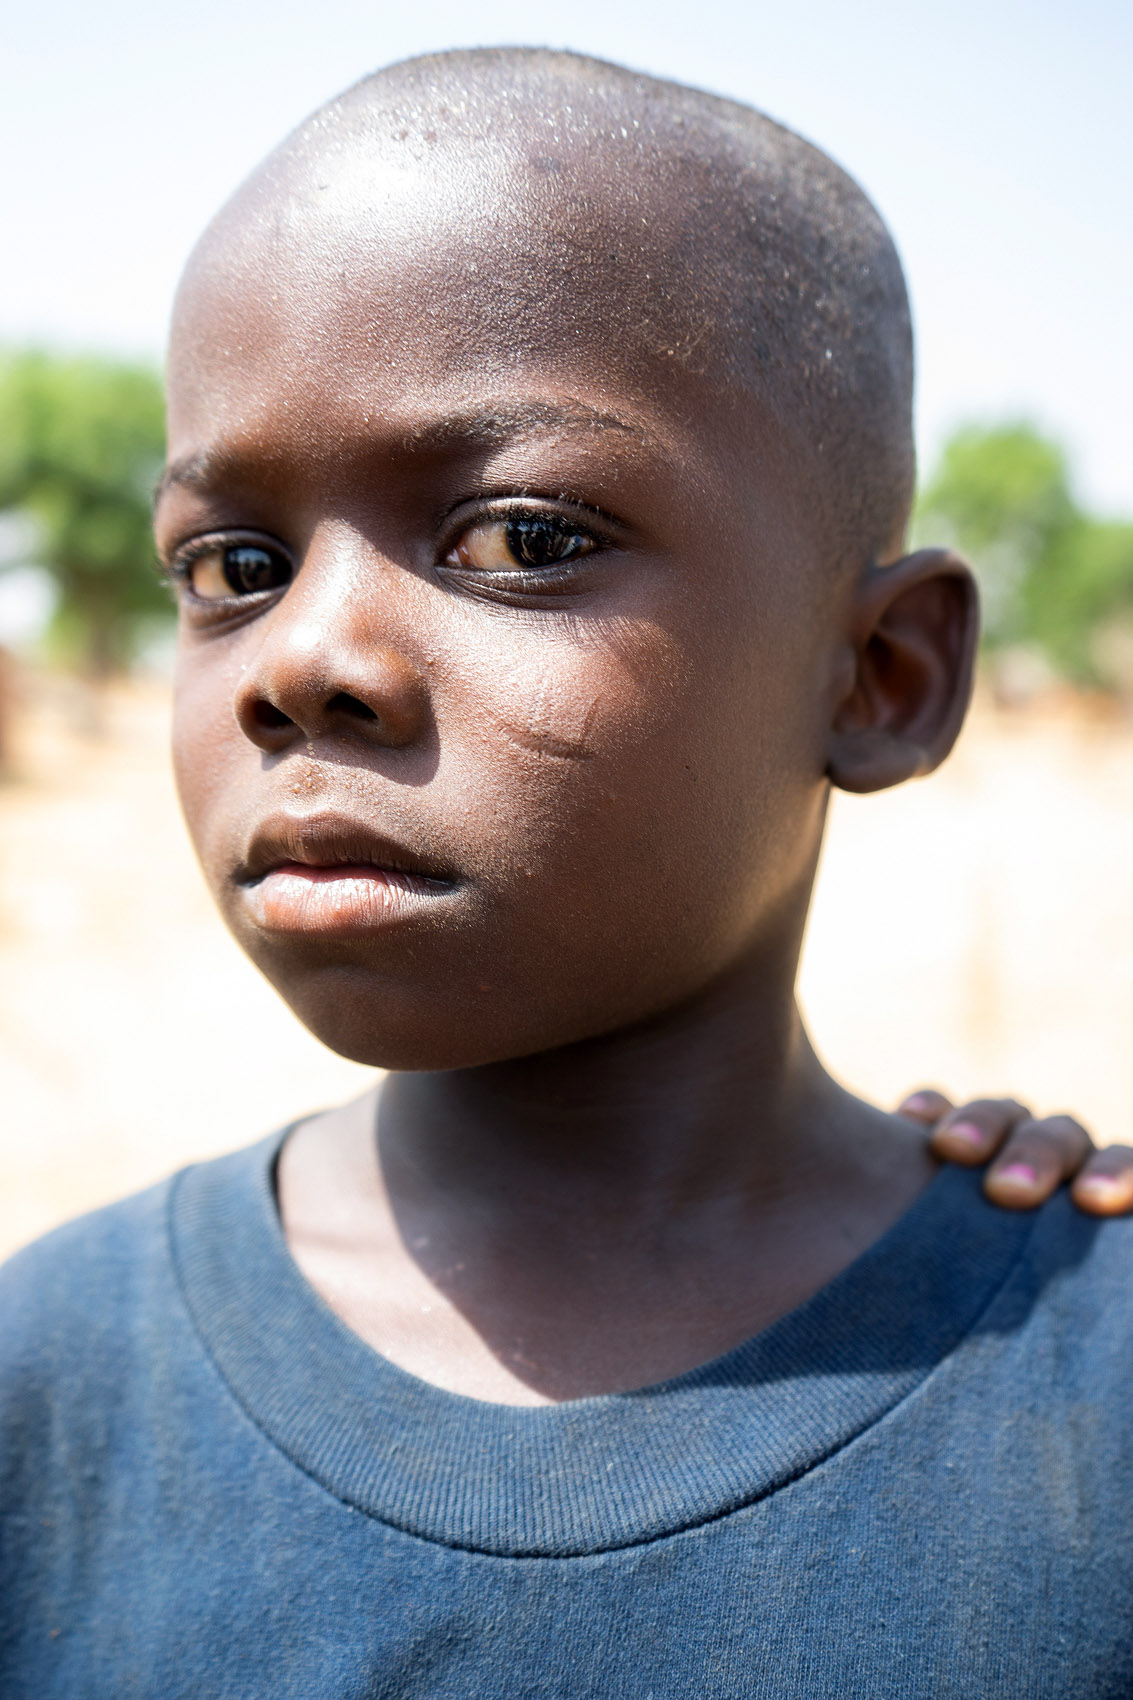 Junge mit Narbenverzierung in Ghana